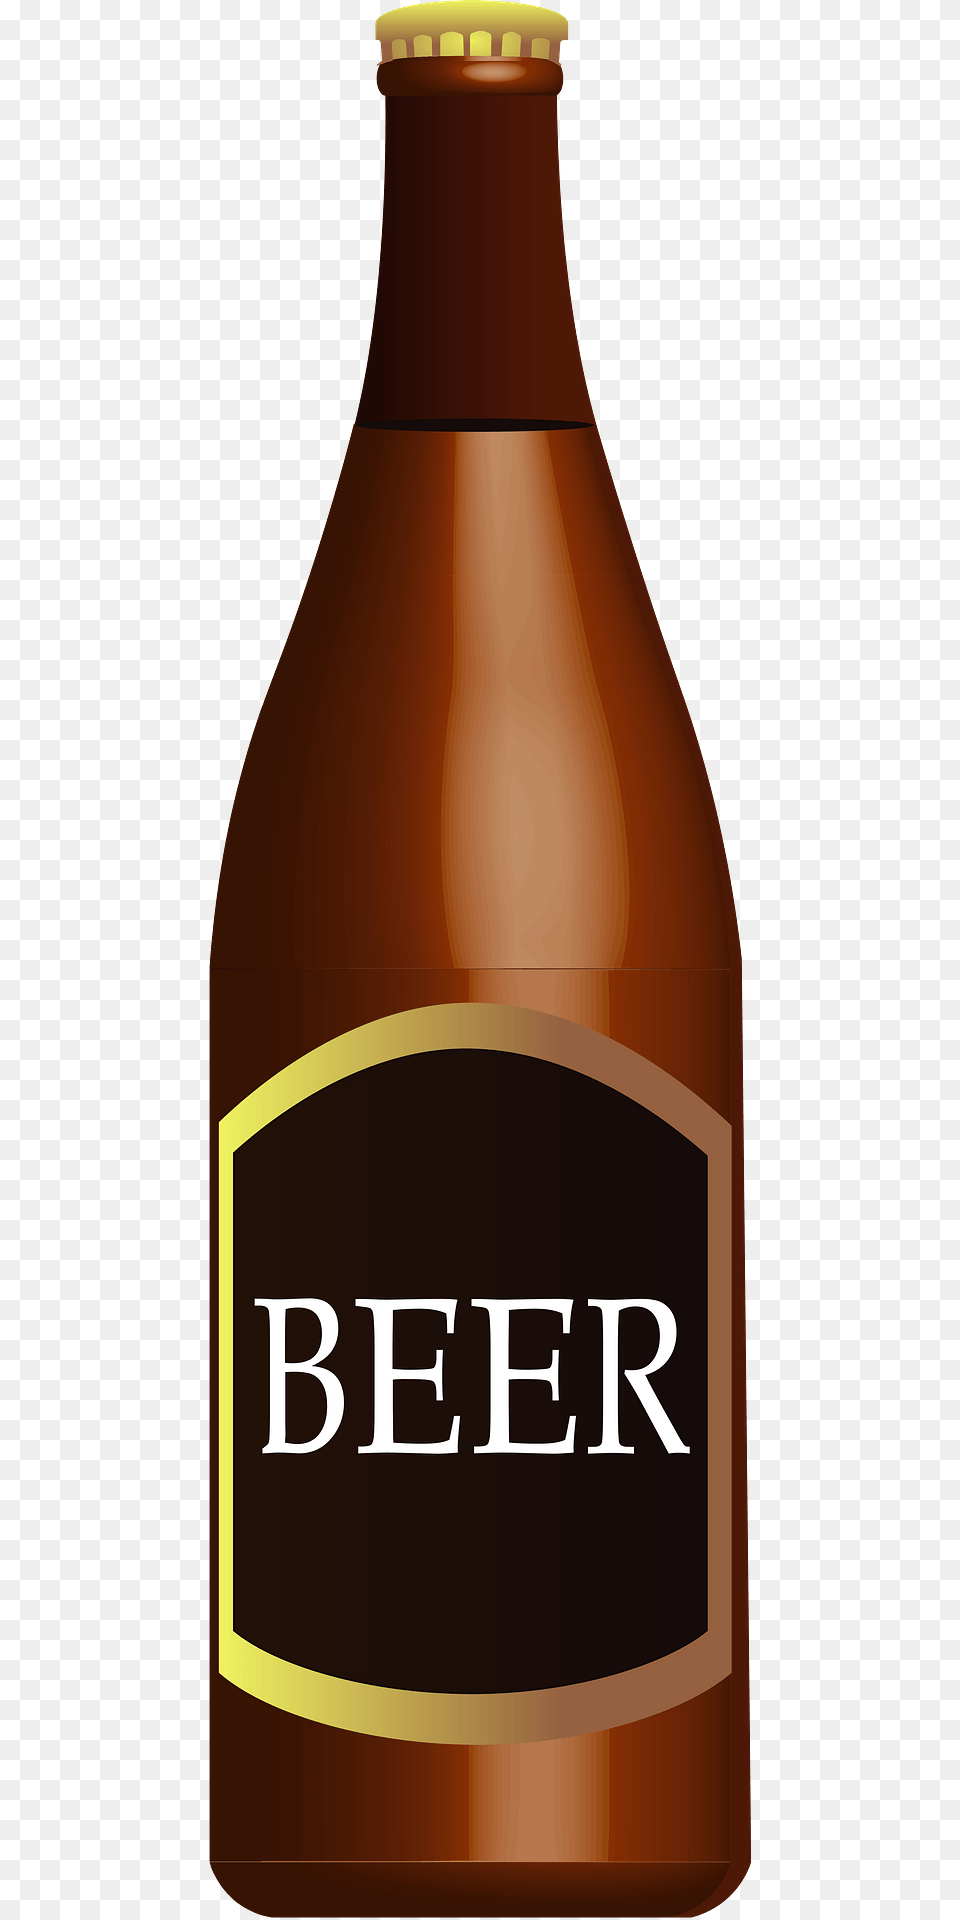 Bottle Beer Clipart, Alcohol, Beverage, Lager, Beer Bottle Png